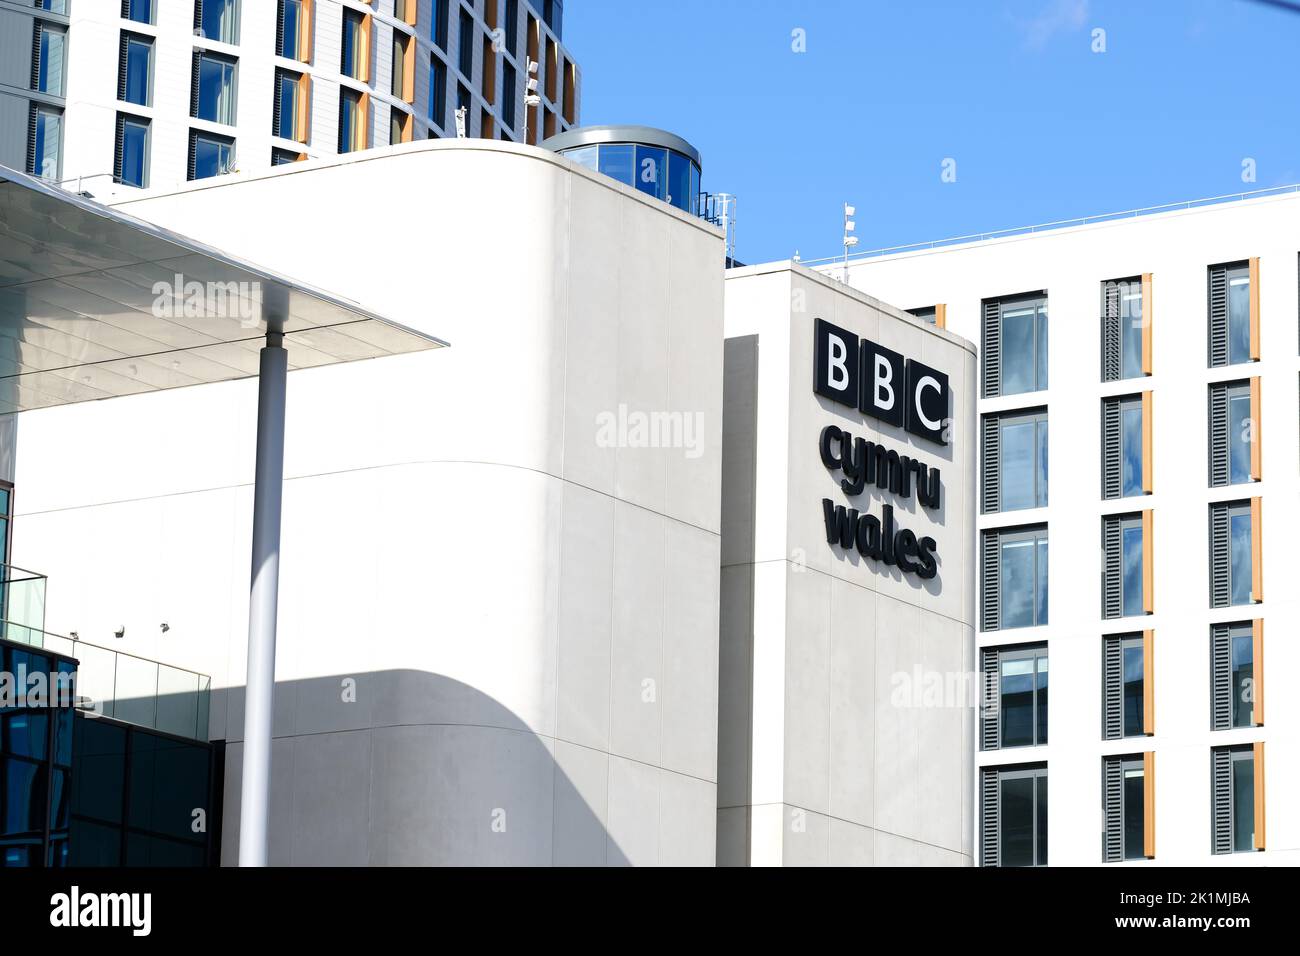 Cardiff Wales - La nueva sede de la BBC Cymru Wales ( radio y televisión ) en el centro de Cardiff visto en 2022 Foto de stock